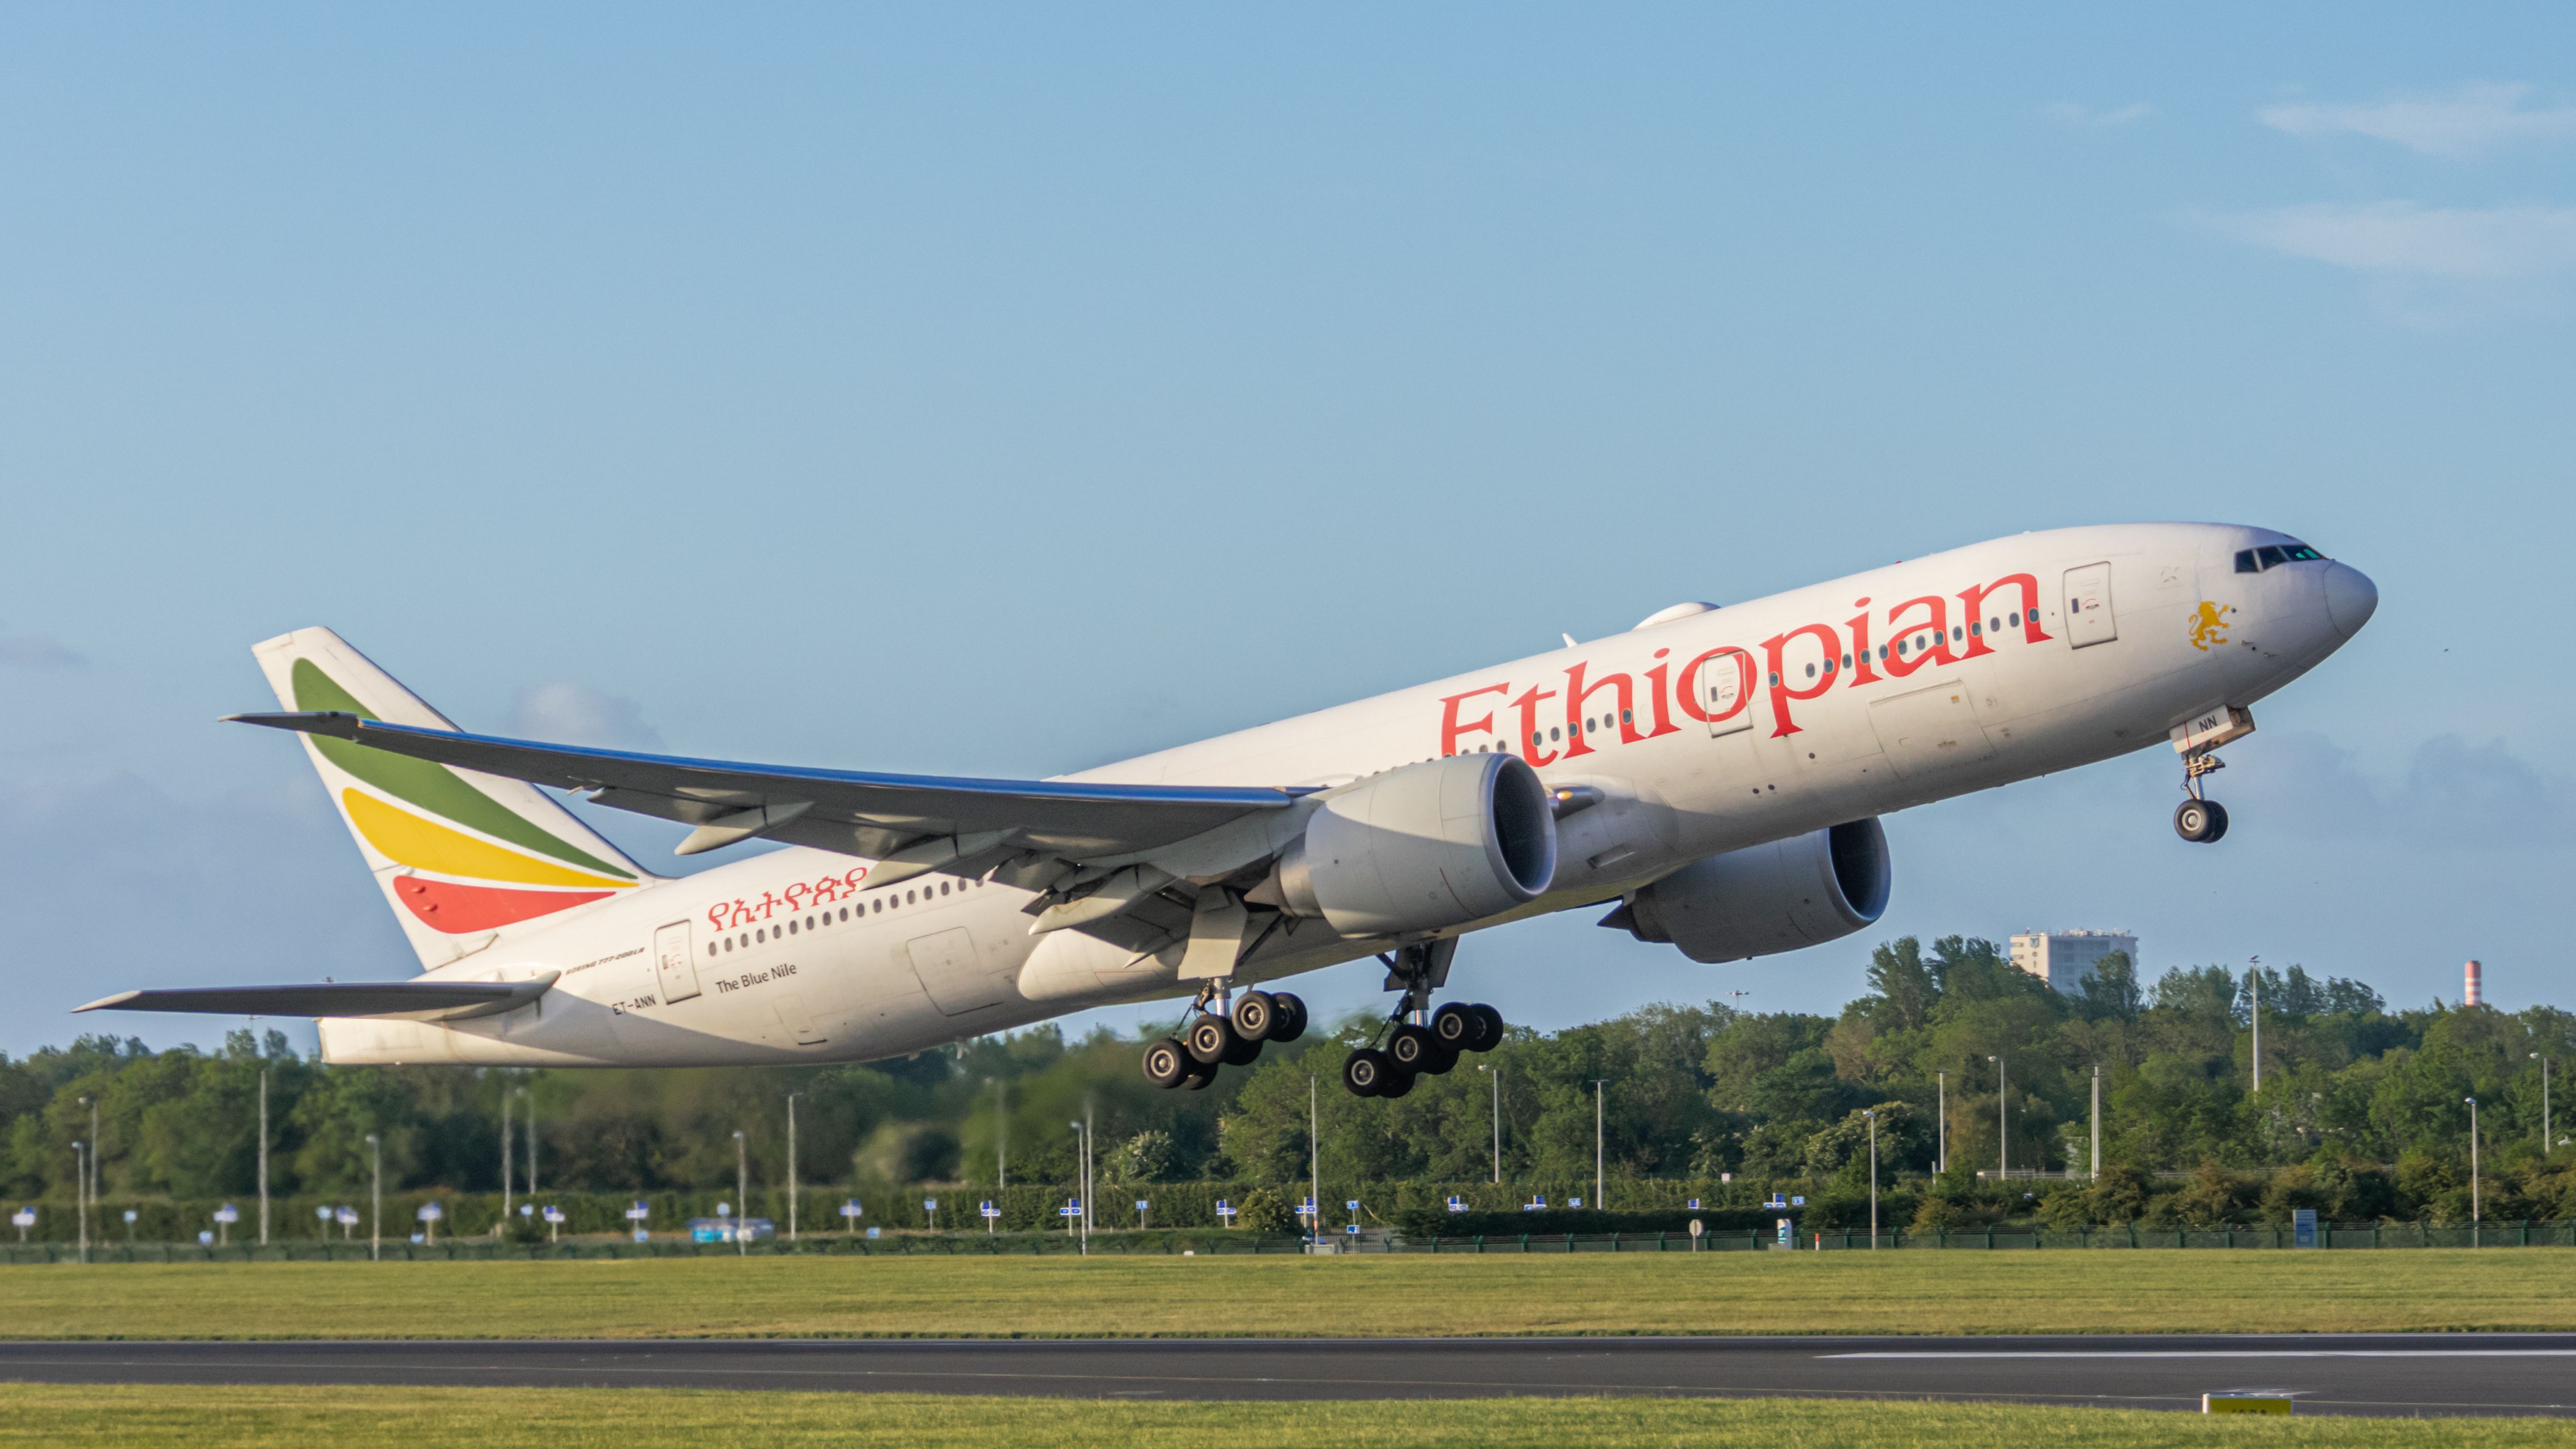 Ethiopian Airlines Boeing 777-200LR